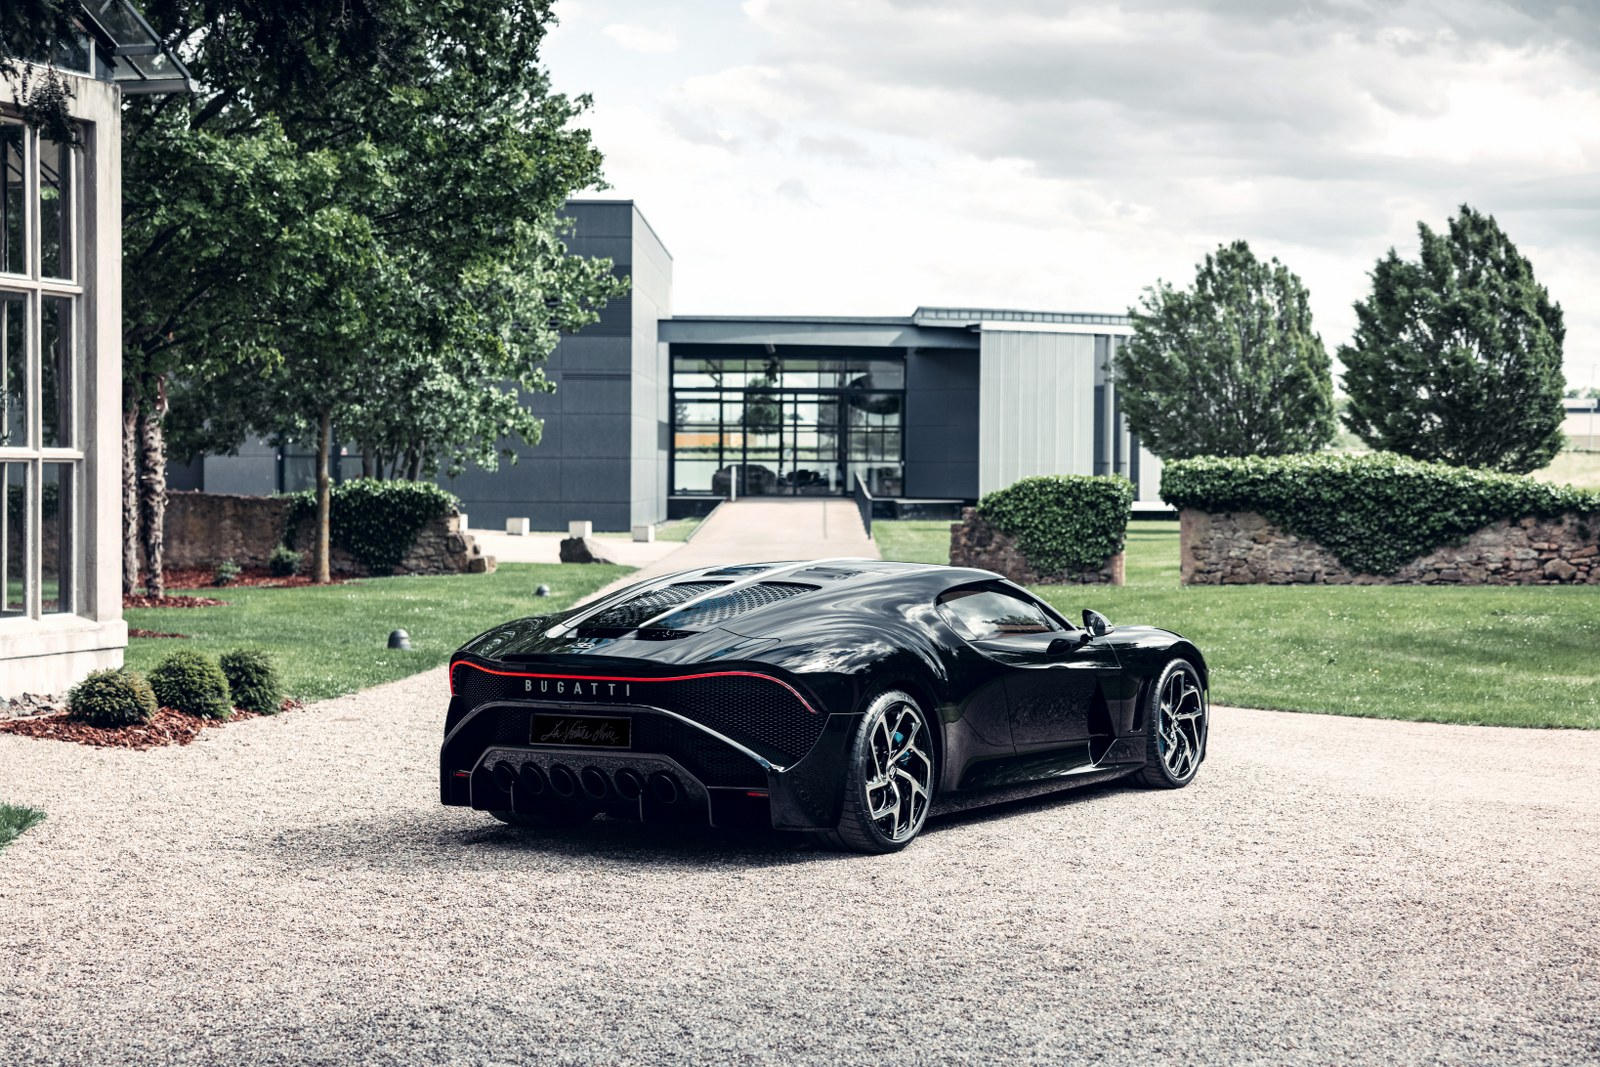 Еще в 2019 году Bugatti анонсировал новый гиперкар, созданный как уникальное произведение искусства. Названный La Voiture Noire (Черная машина), это шедевр стоимостью 1,3 млрд рублей, и с тех пор, как мы впервые его увидели, он стал увлекательной тем